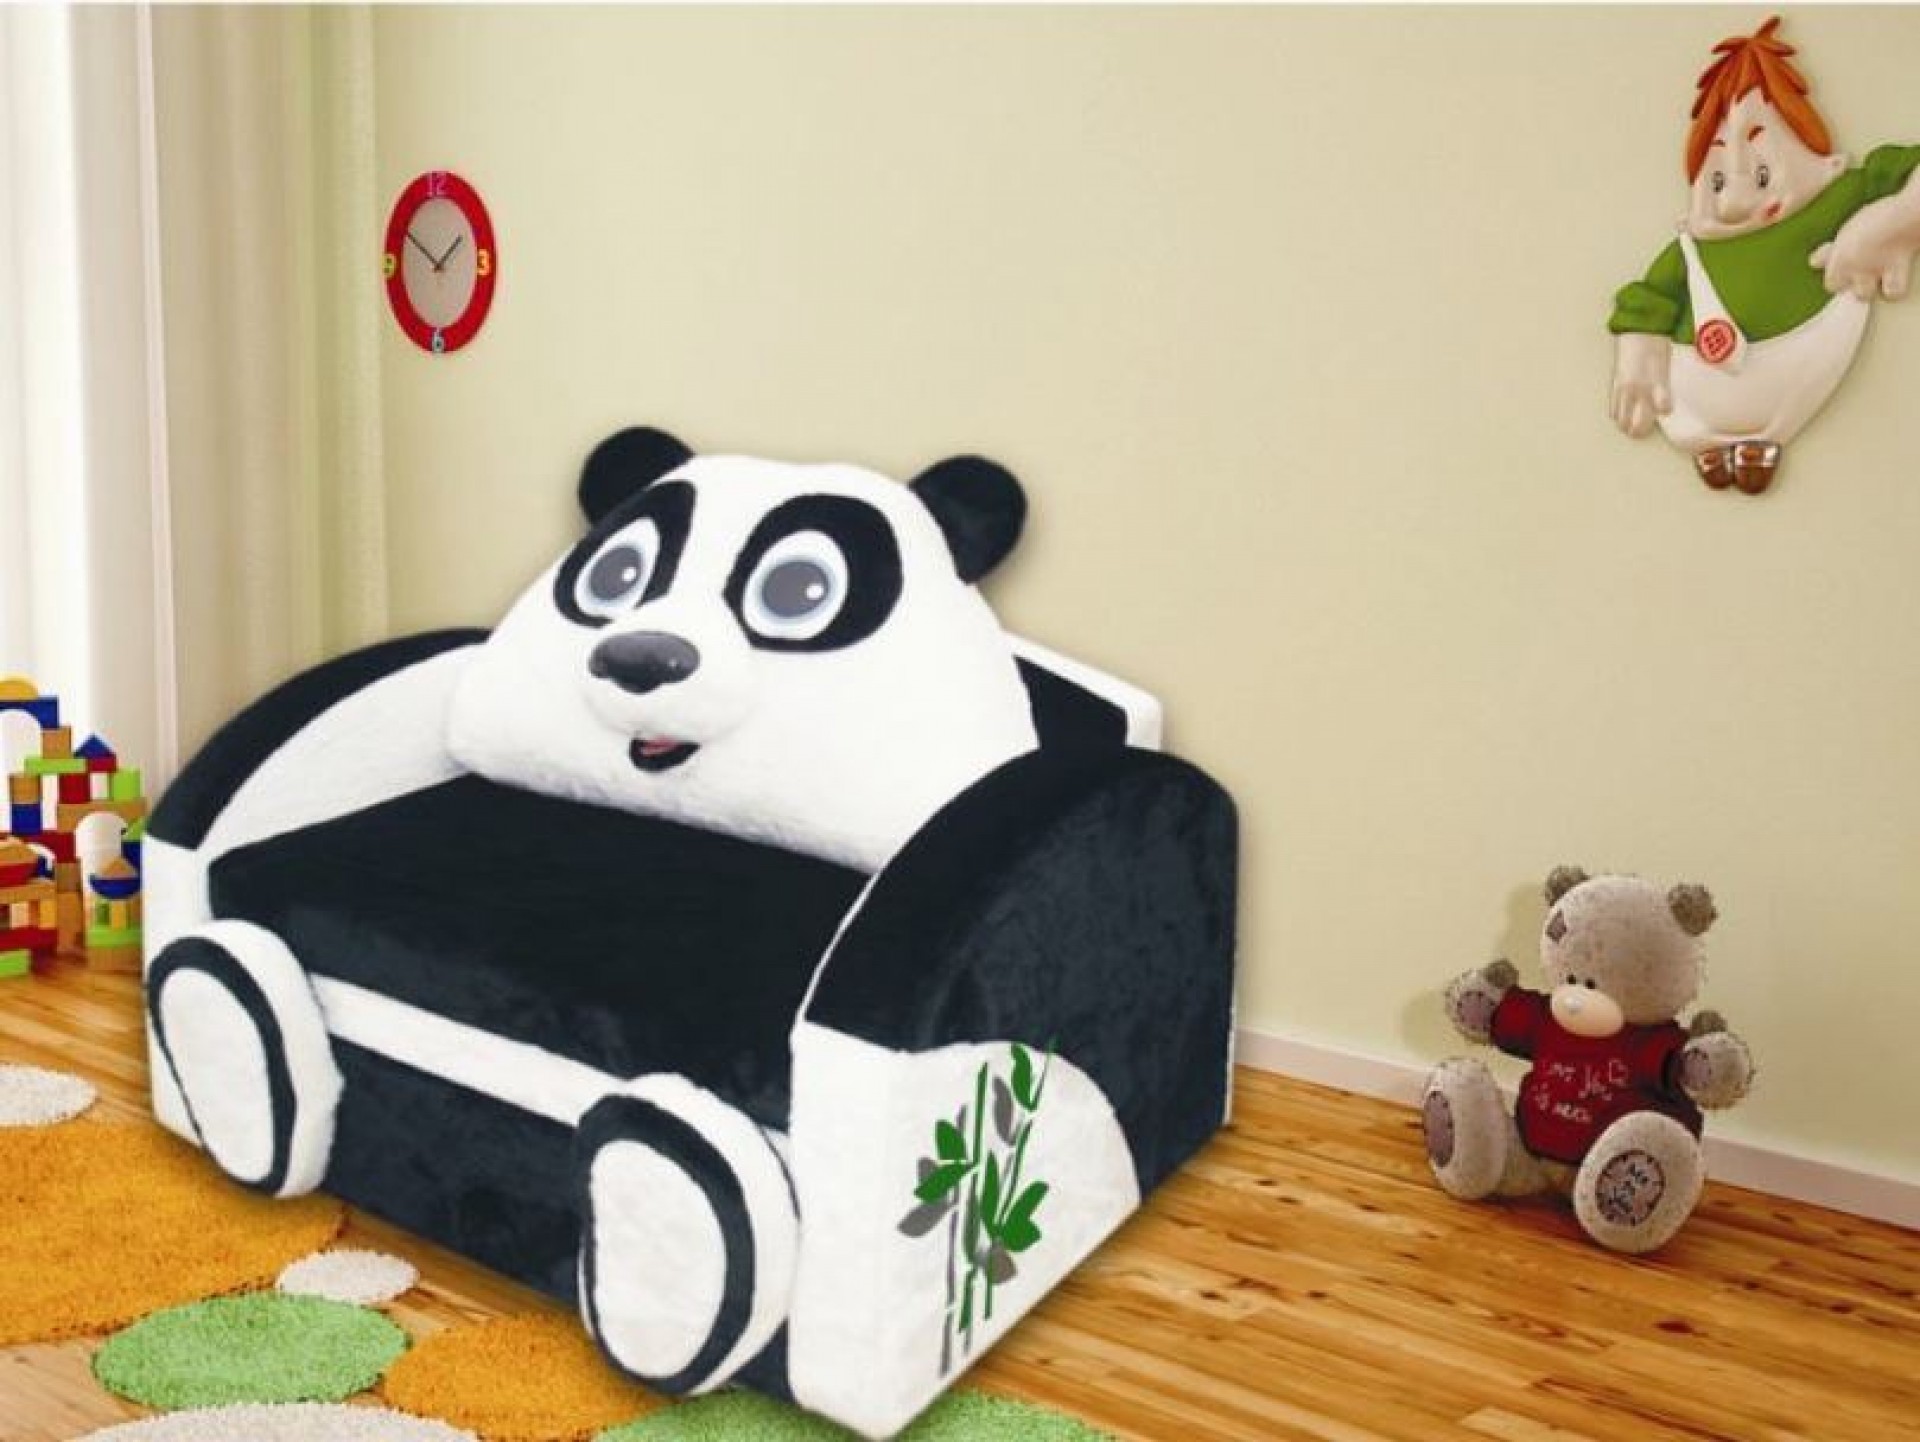 Детский диван "Панда" приобрести в Томске